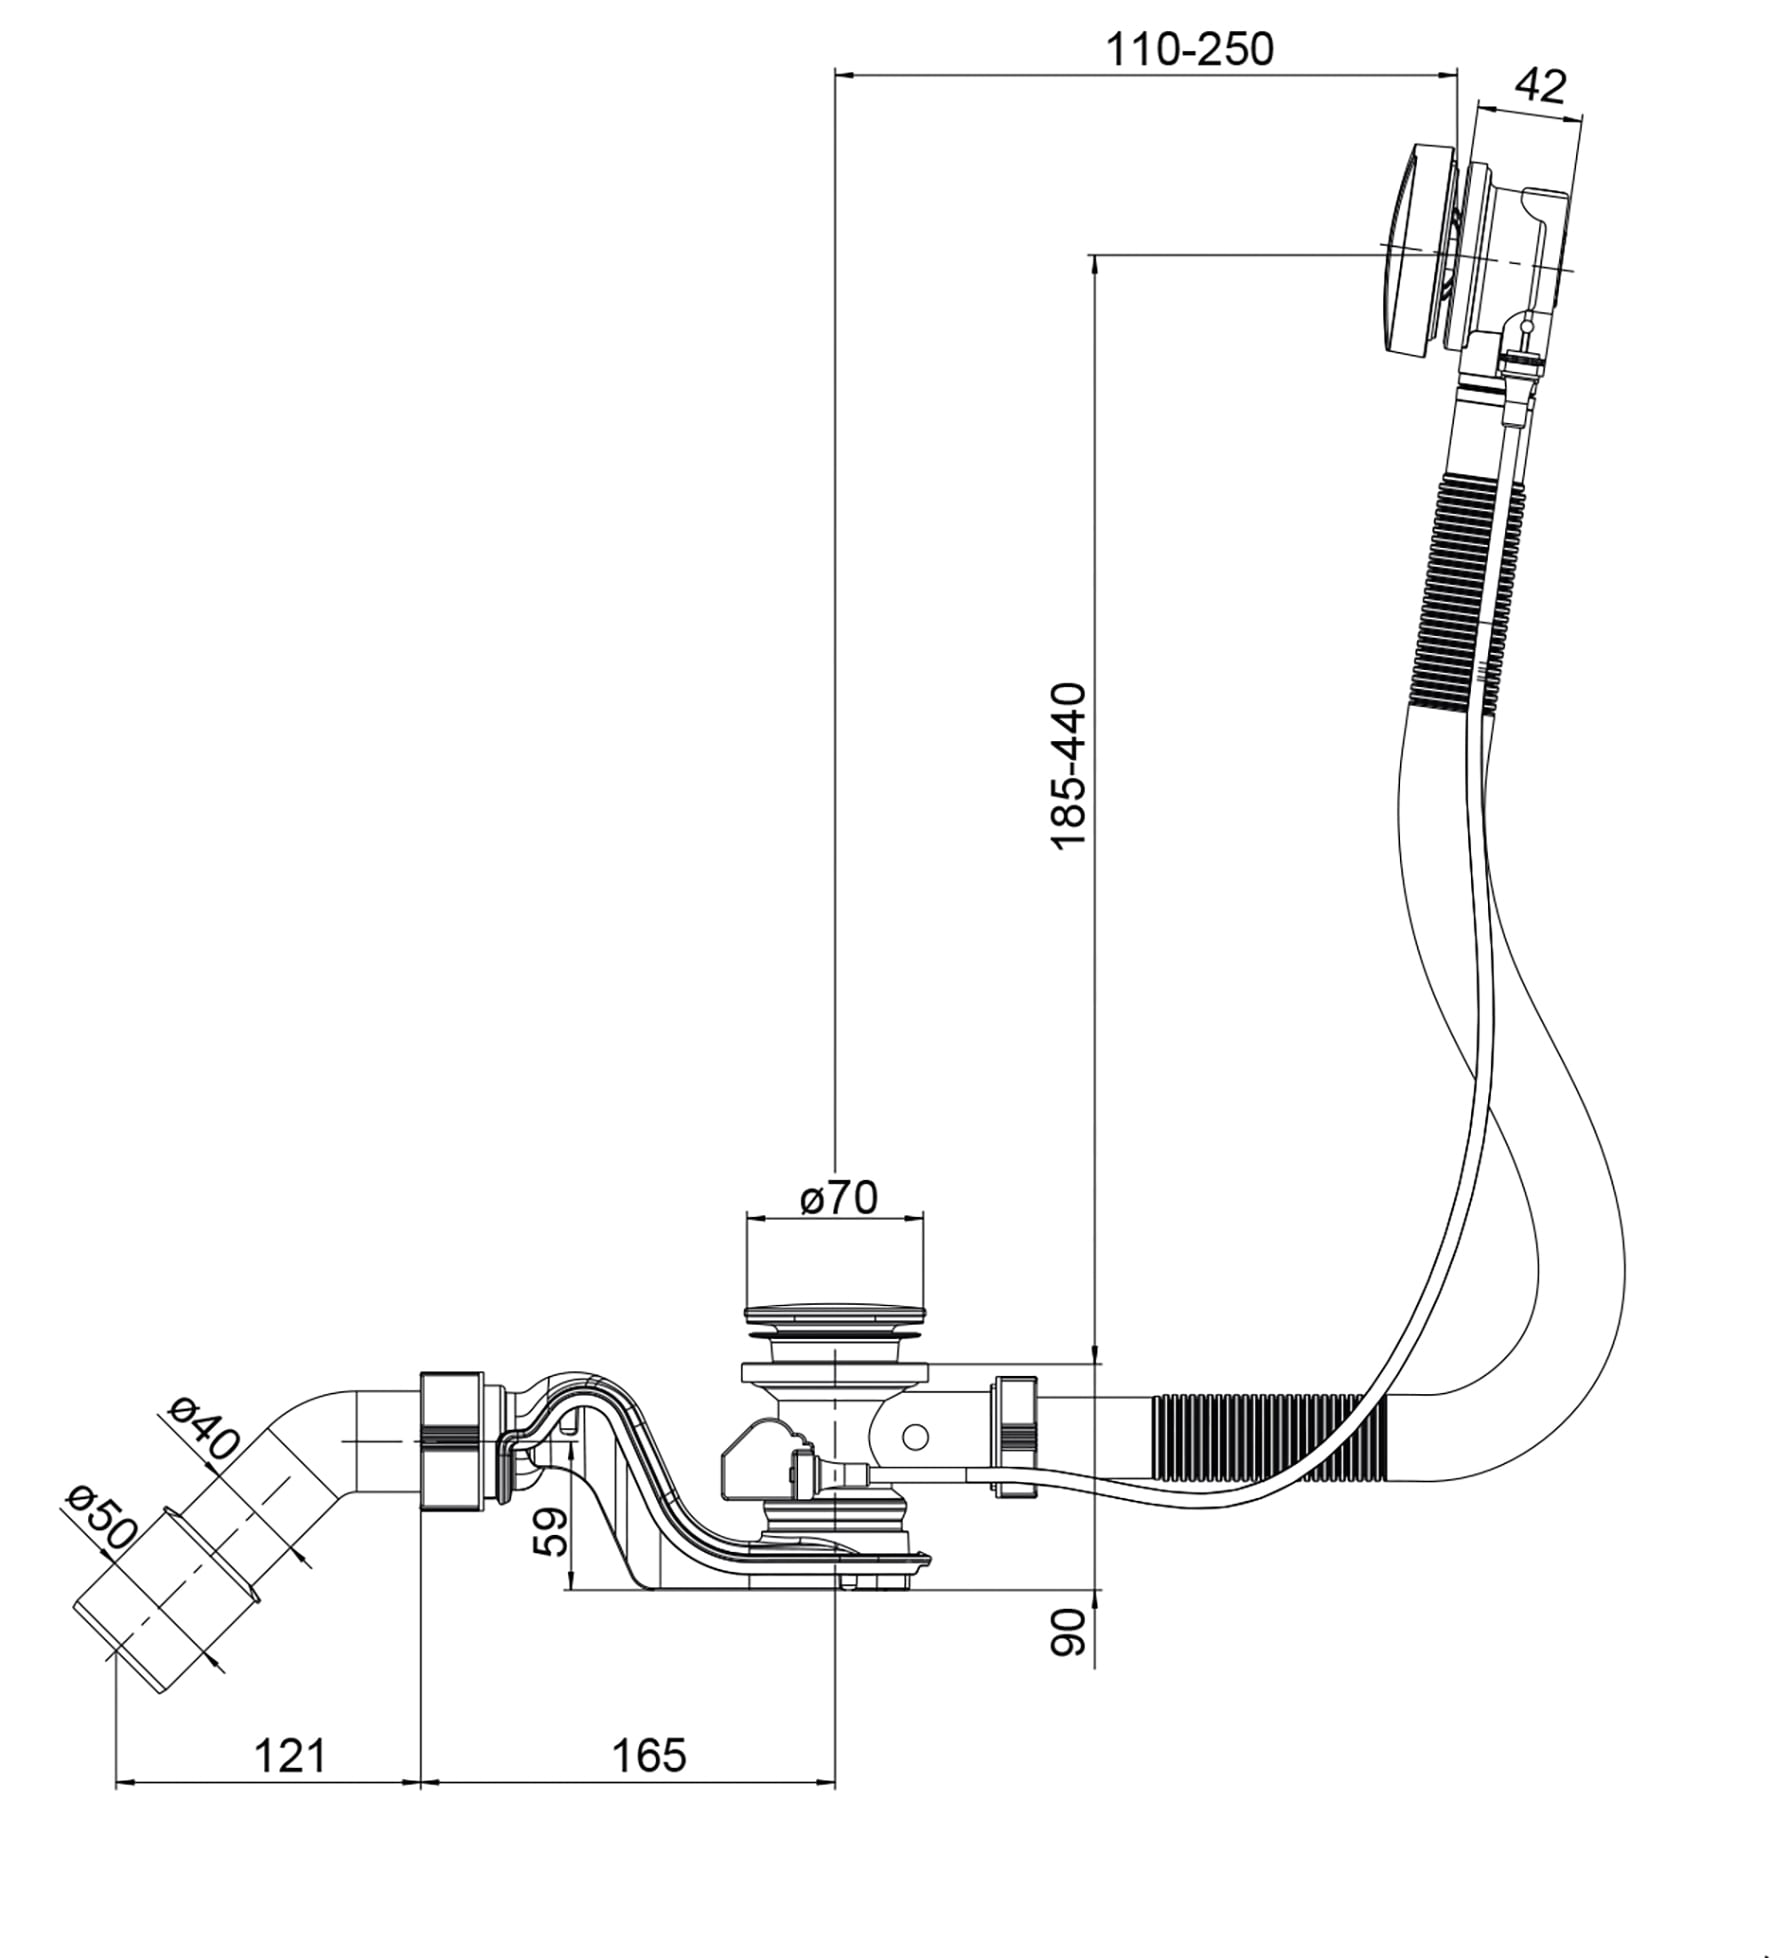 OTTOFOND Ablaufgarnitur »Standard«, Ab- und Überlaufgarnitur für Badewannen, Ablaufanschluss ⌀ 40/50 mm